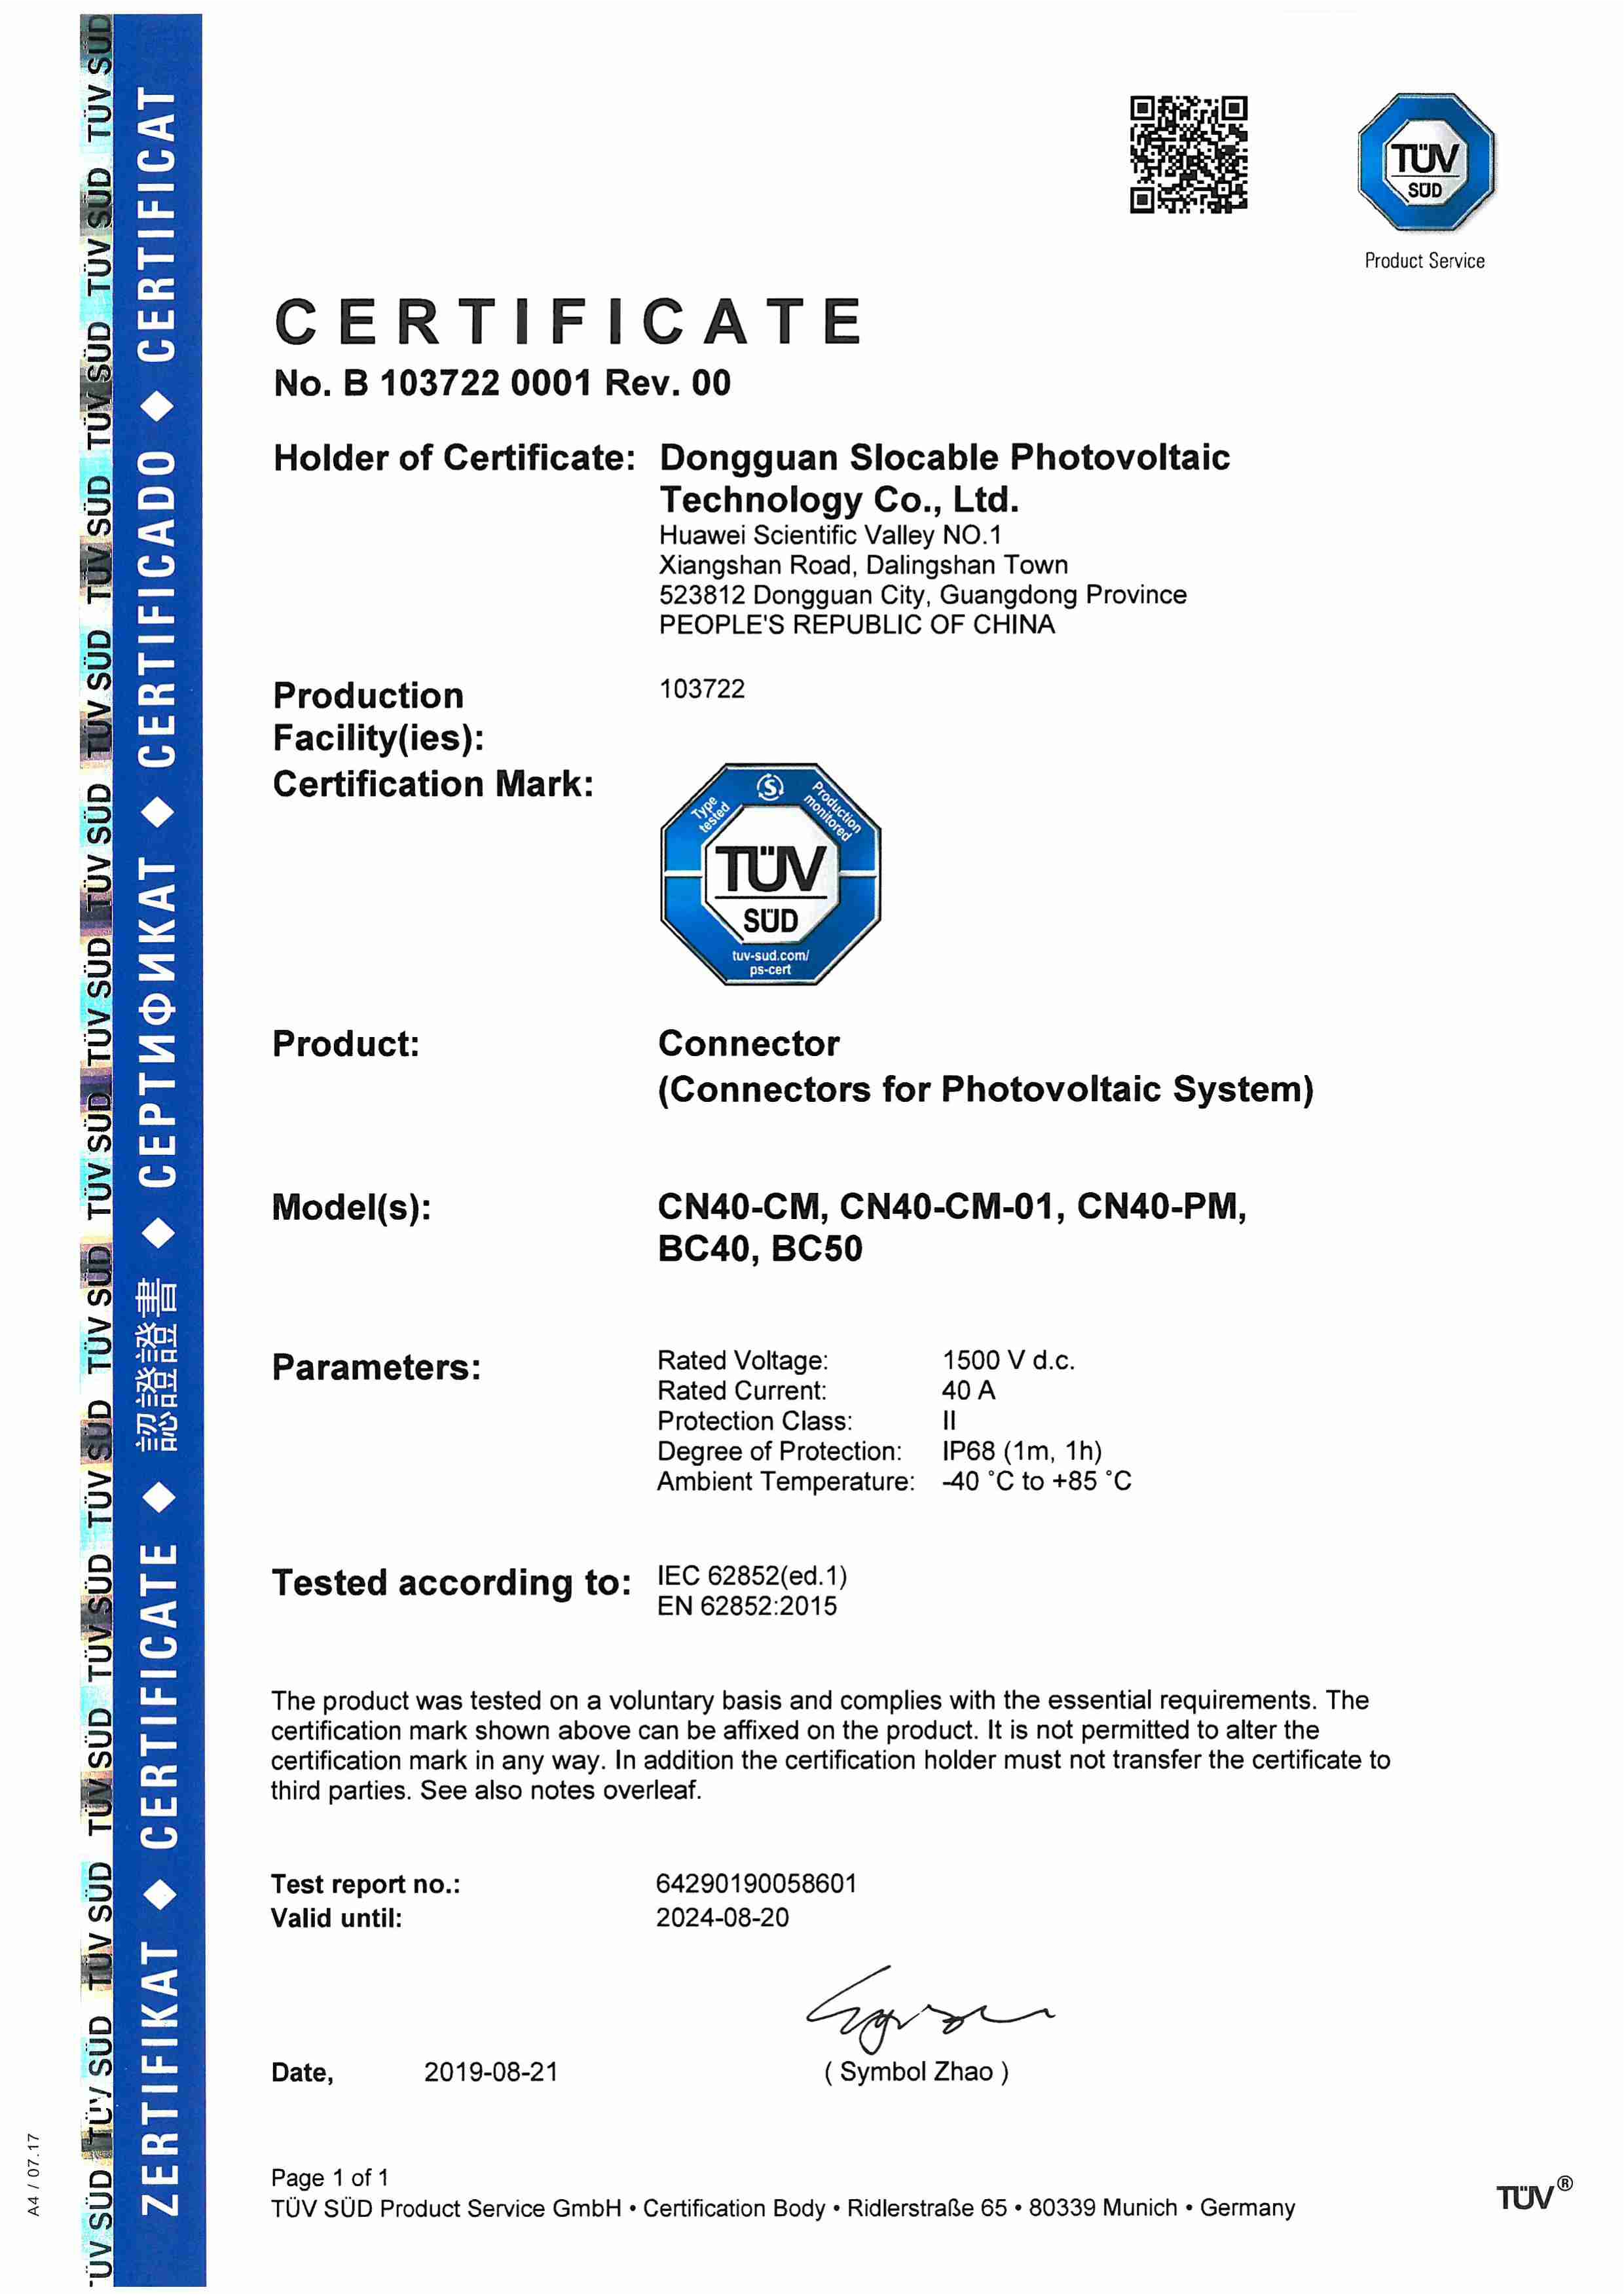 光伏连接器TUV EN62852及IEC62852双认证